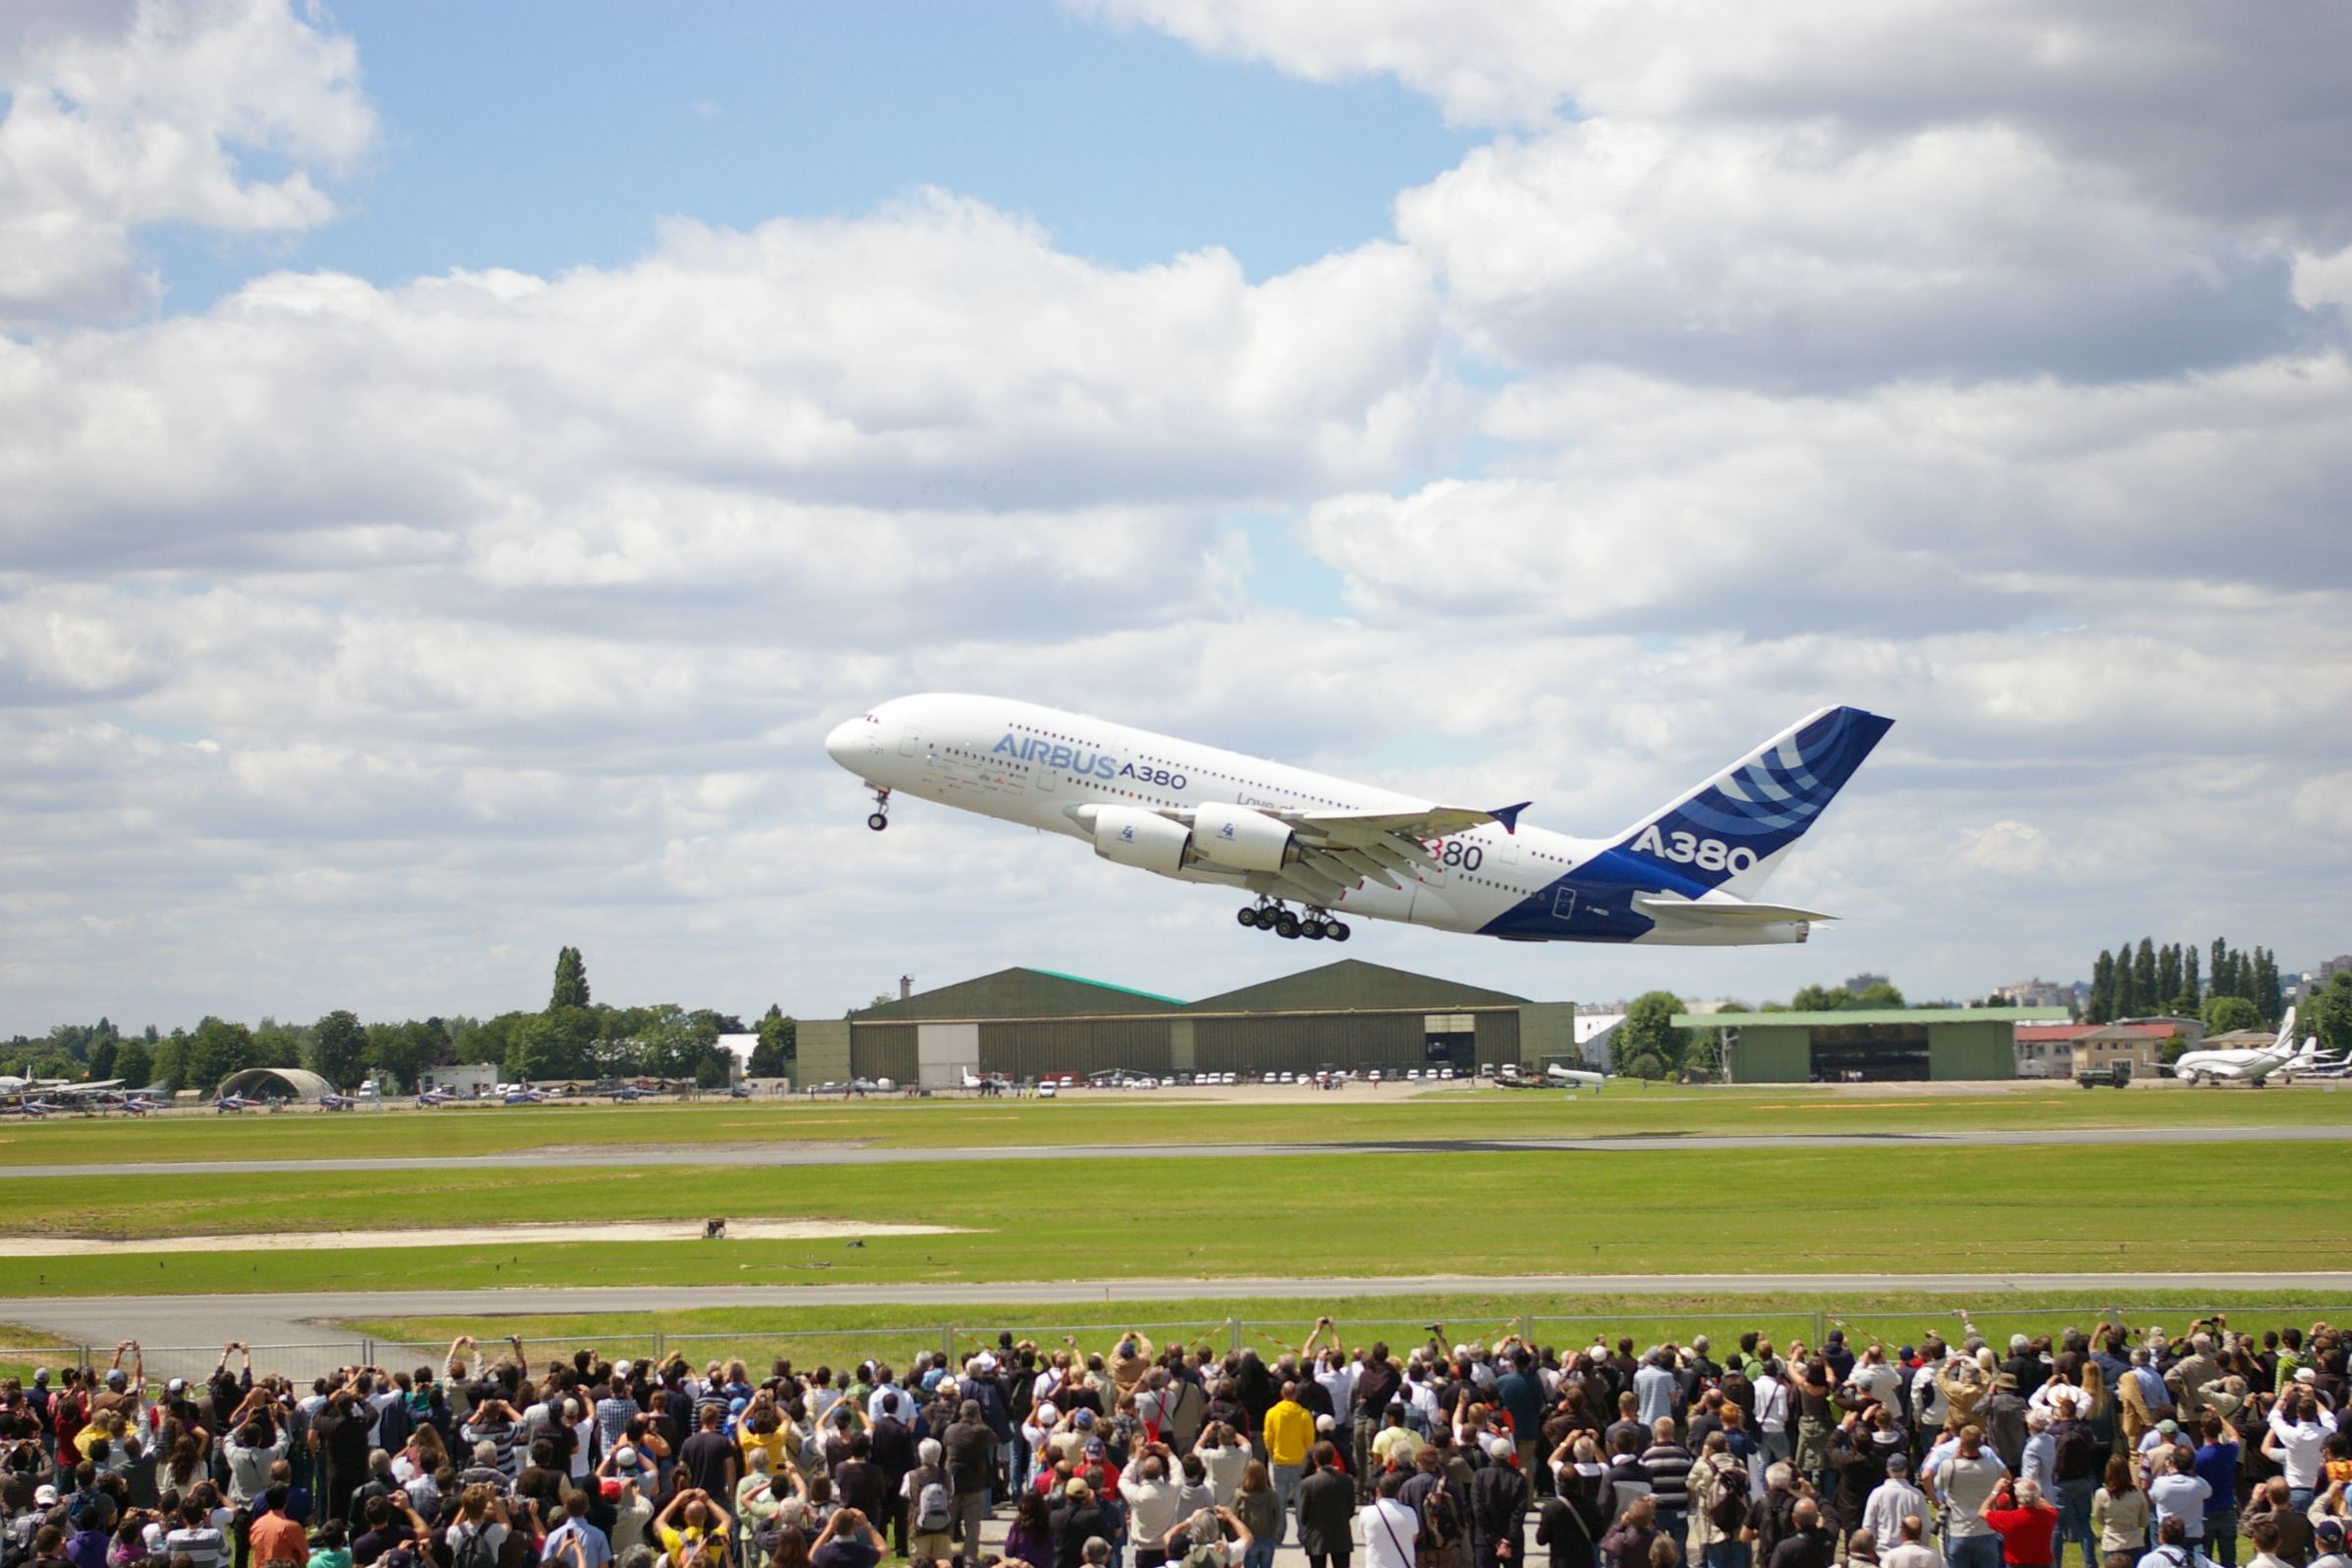 The Airbus A380 at the Paris Air Show